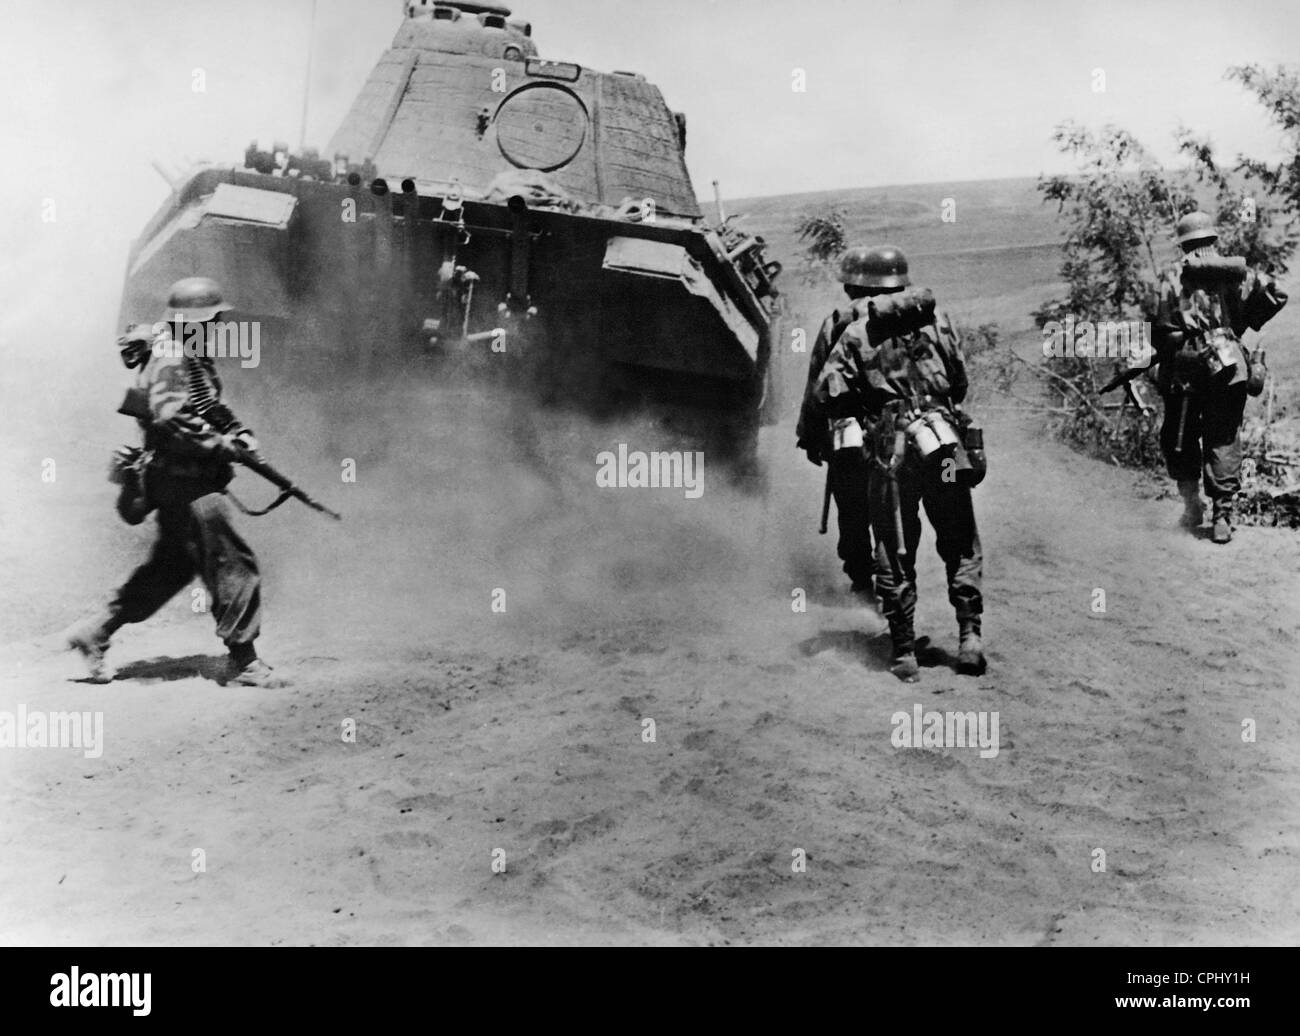 L'infanterie allemande avances en vertu de l'écran d'un réservoir, 1944 Banque D'Images